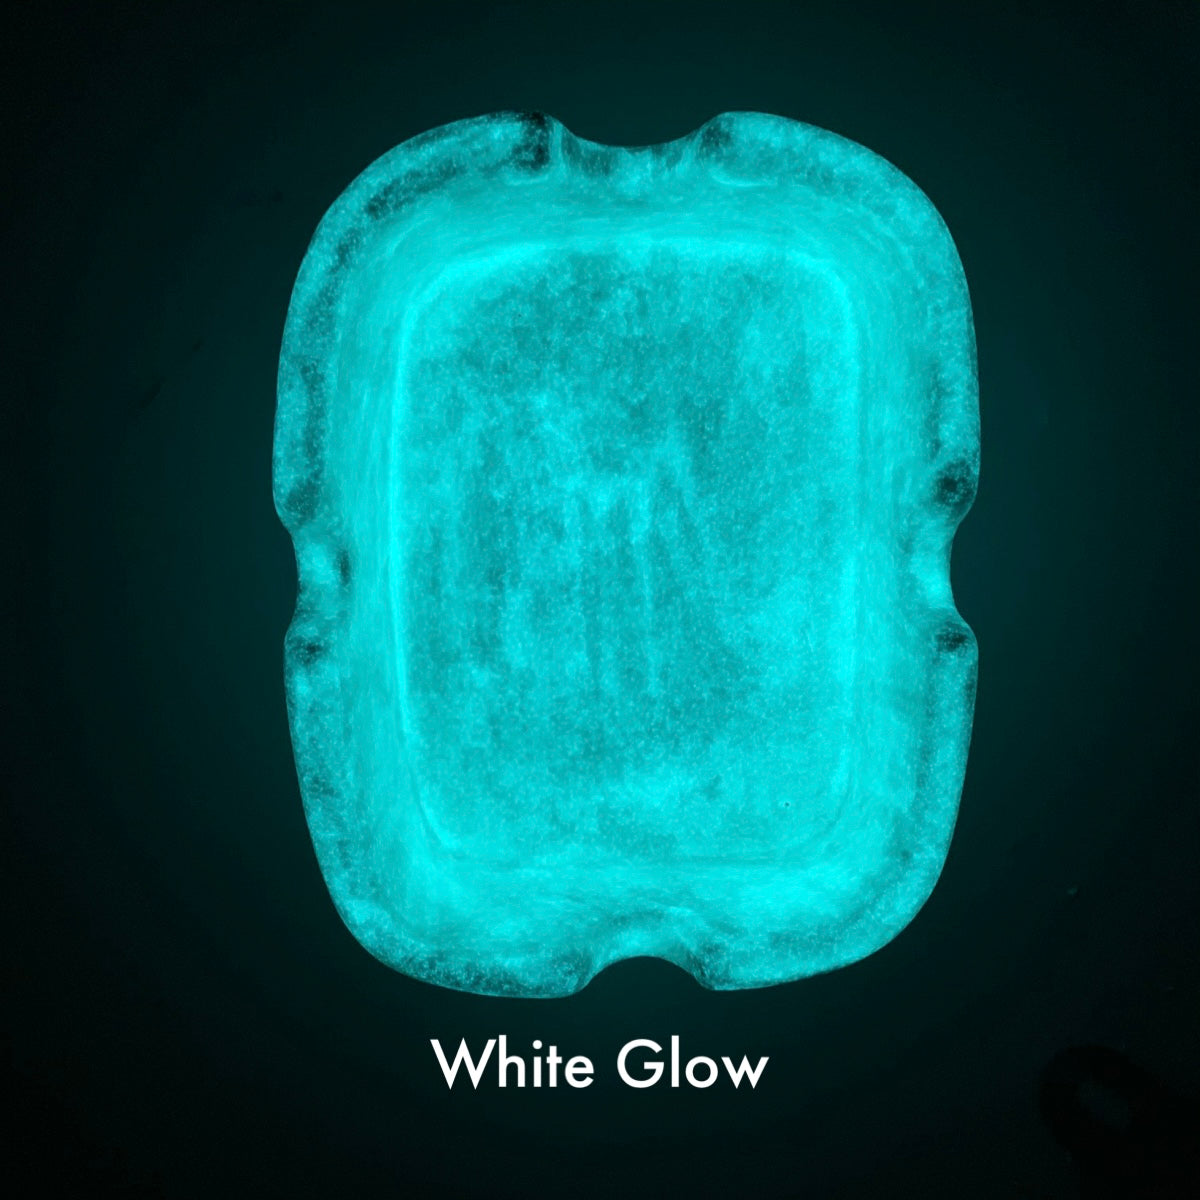 White glow glaze